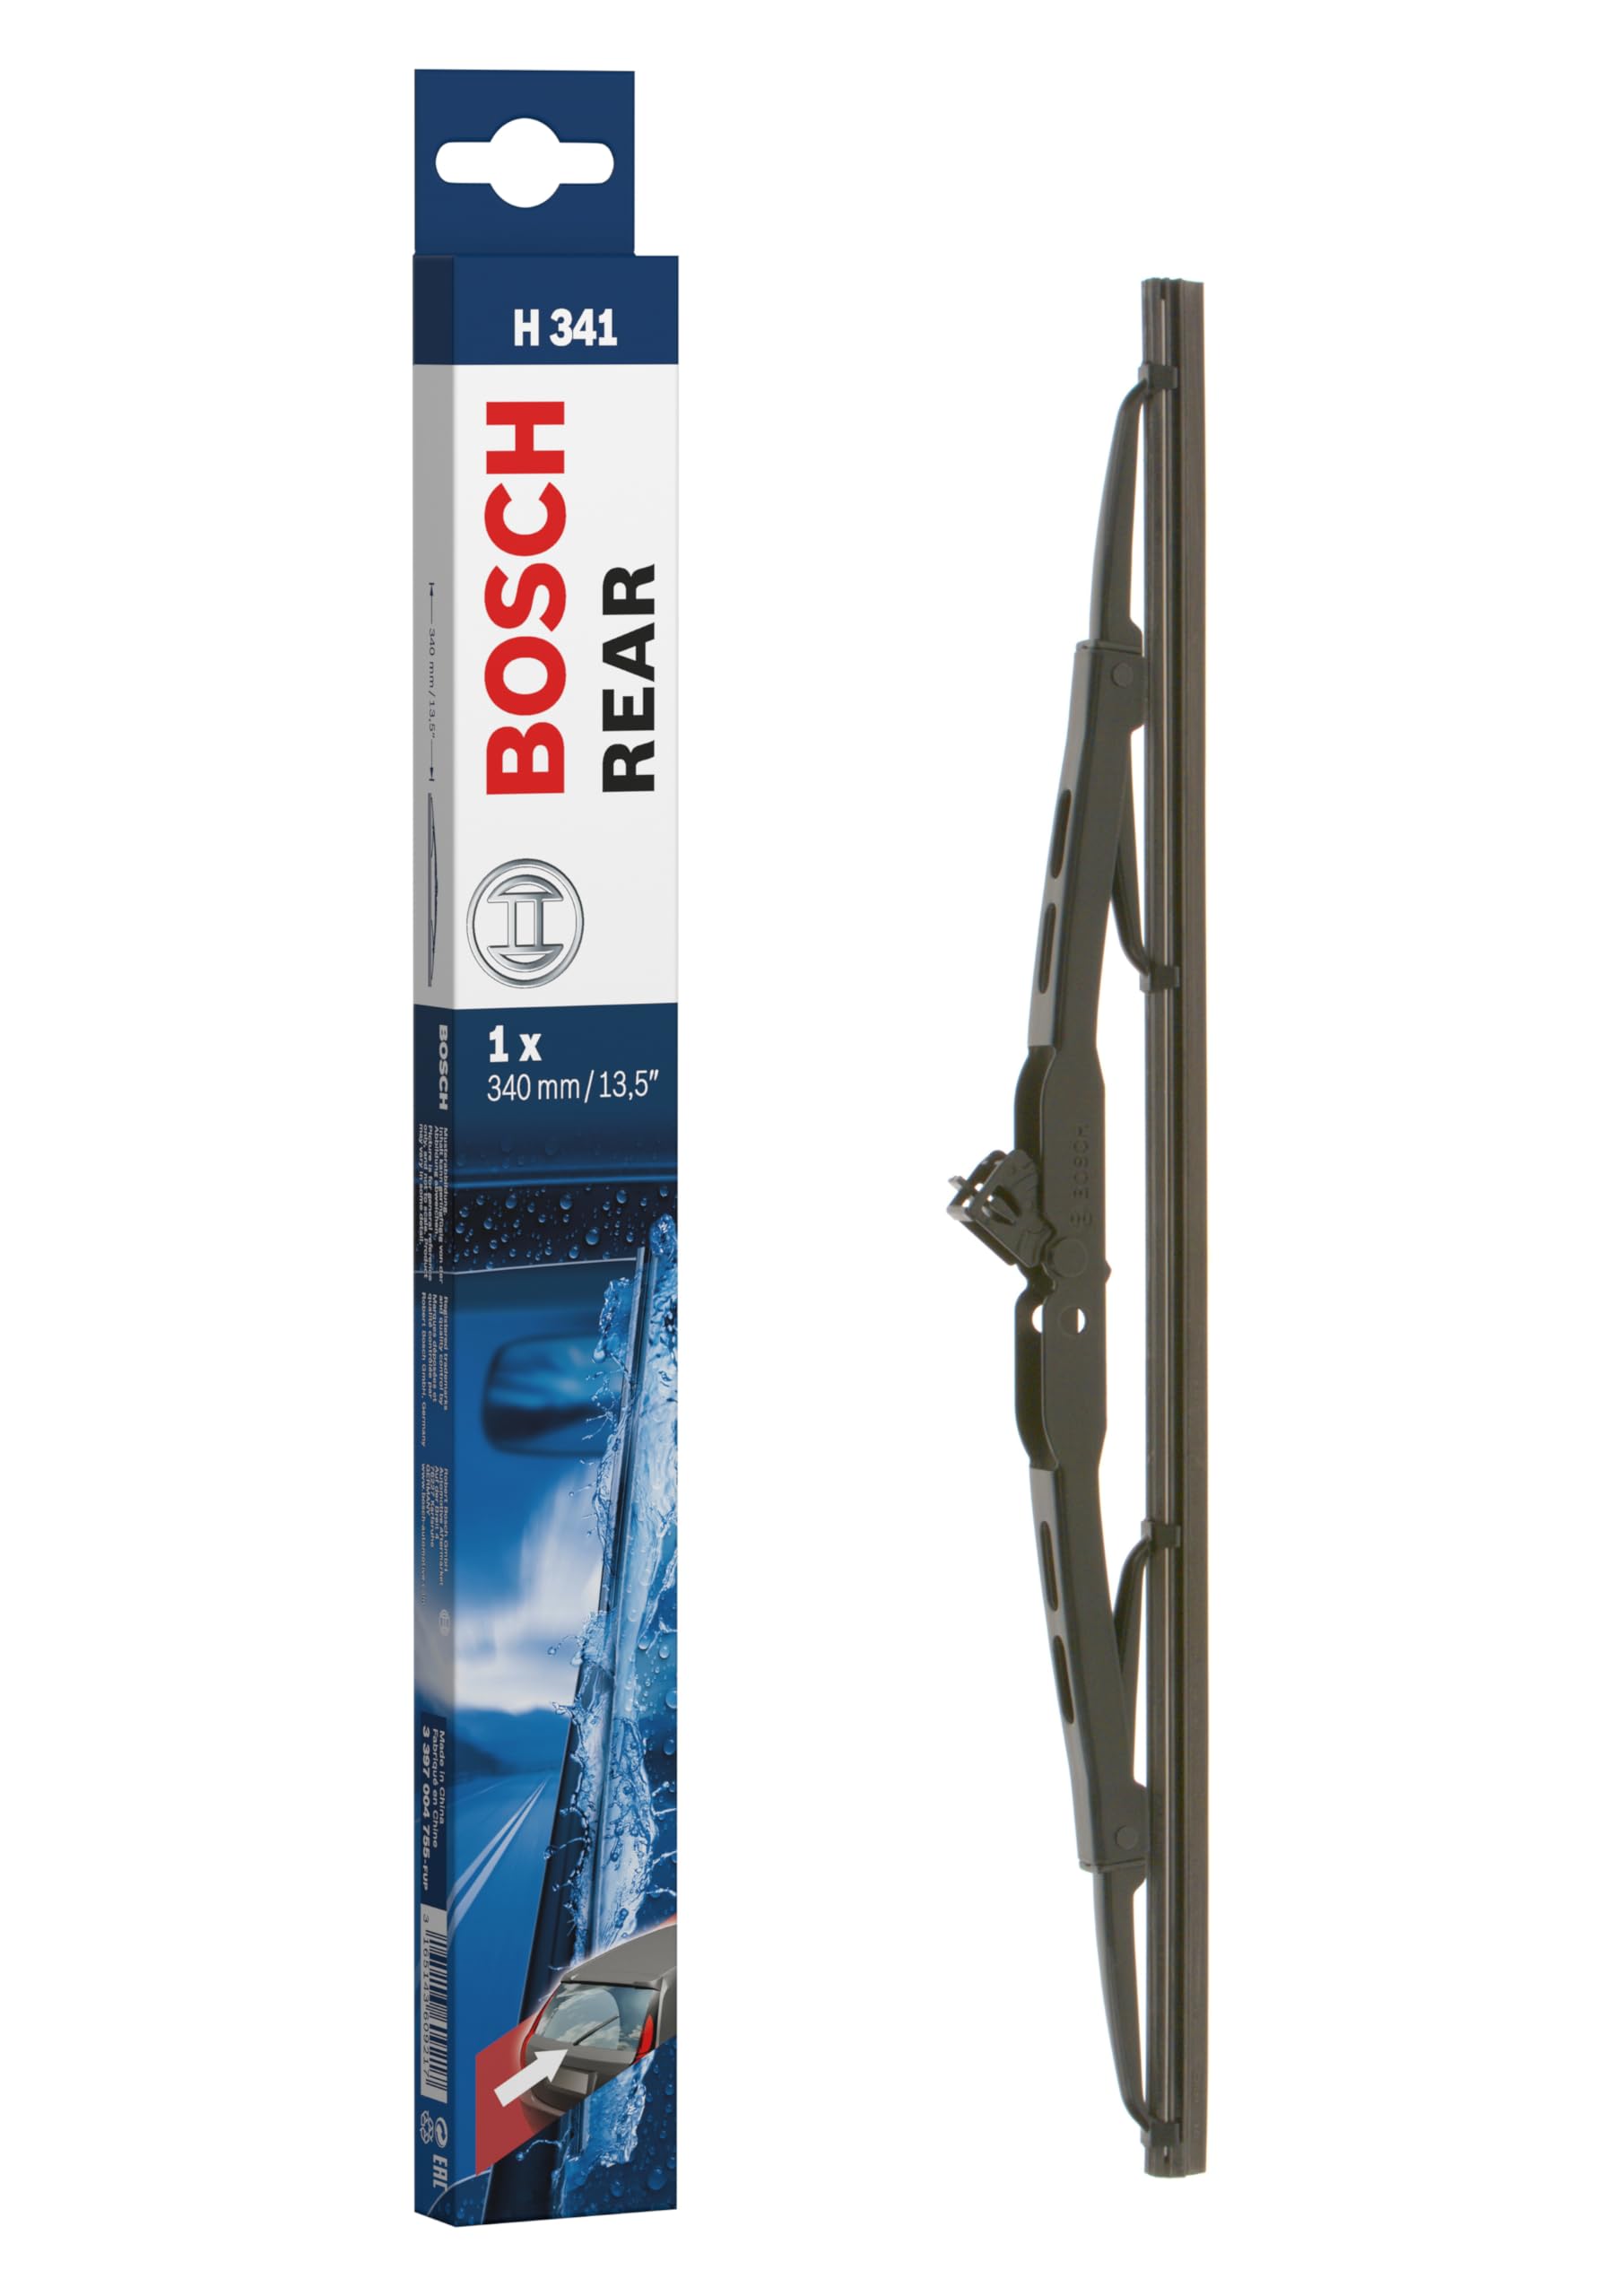 Bosch Scheibenwischer Rear H341, Länge: 340mm – Scheibenwischer für Heckscheibe von Bosch Automotive